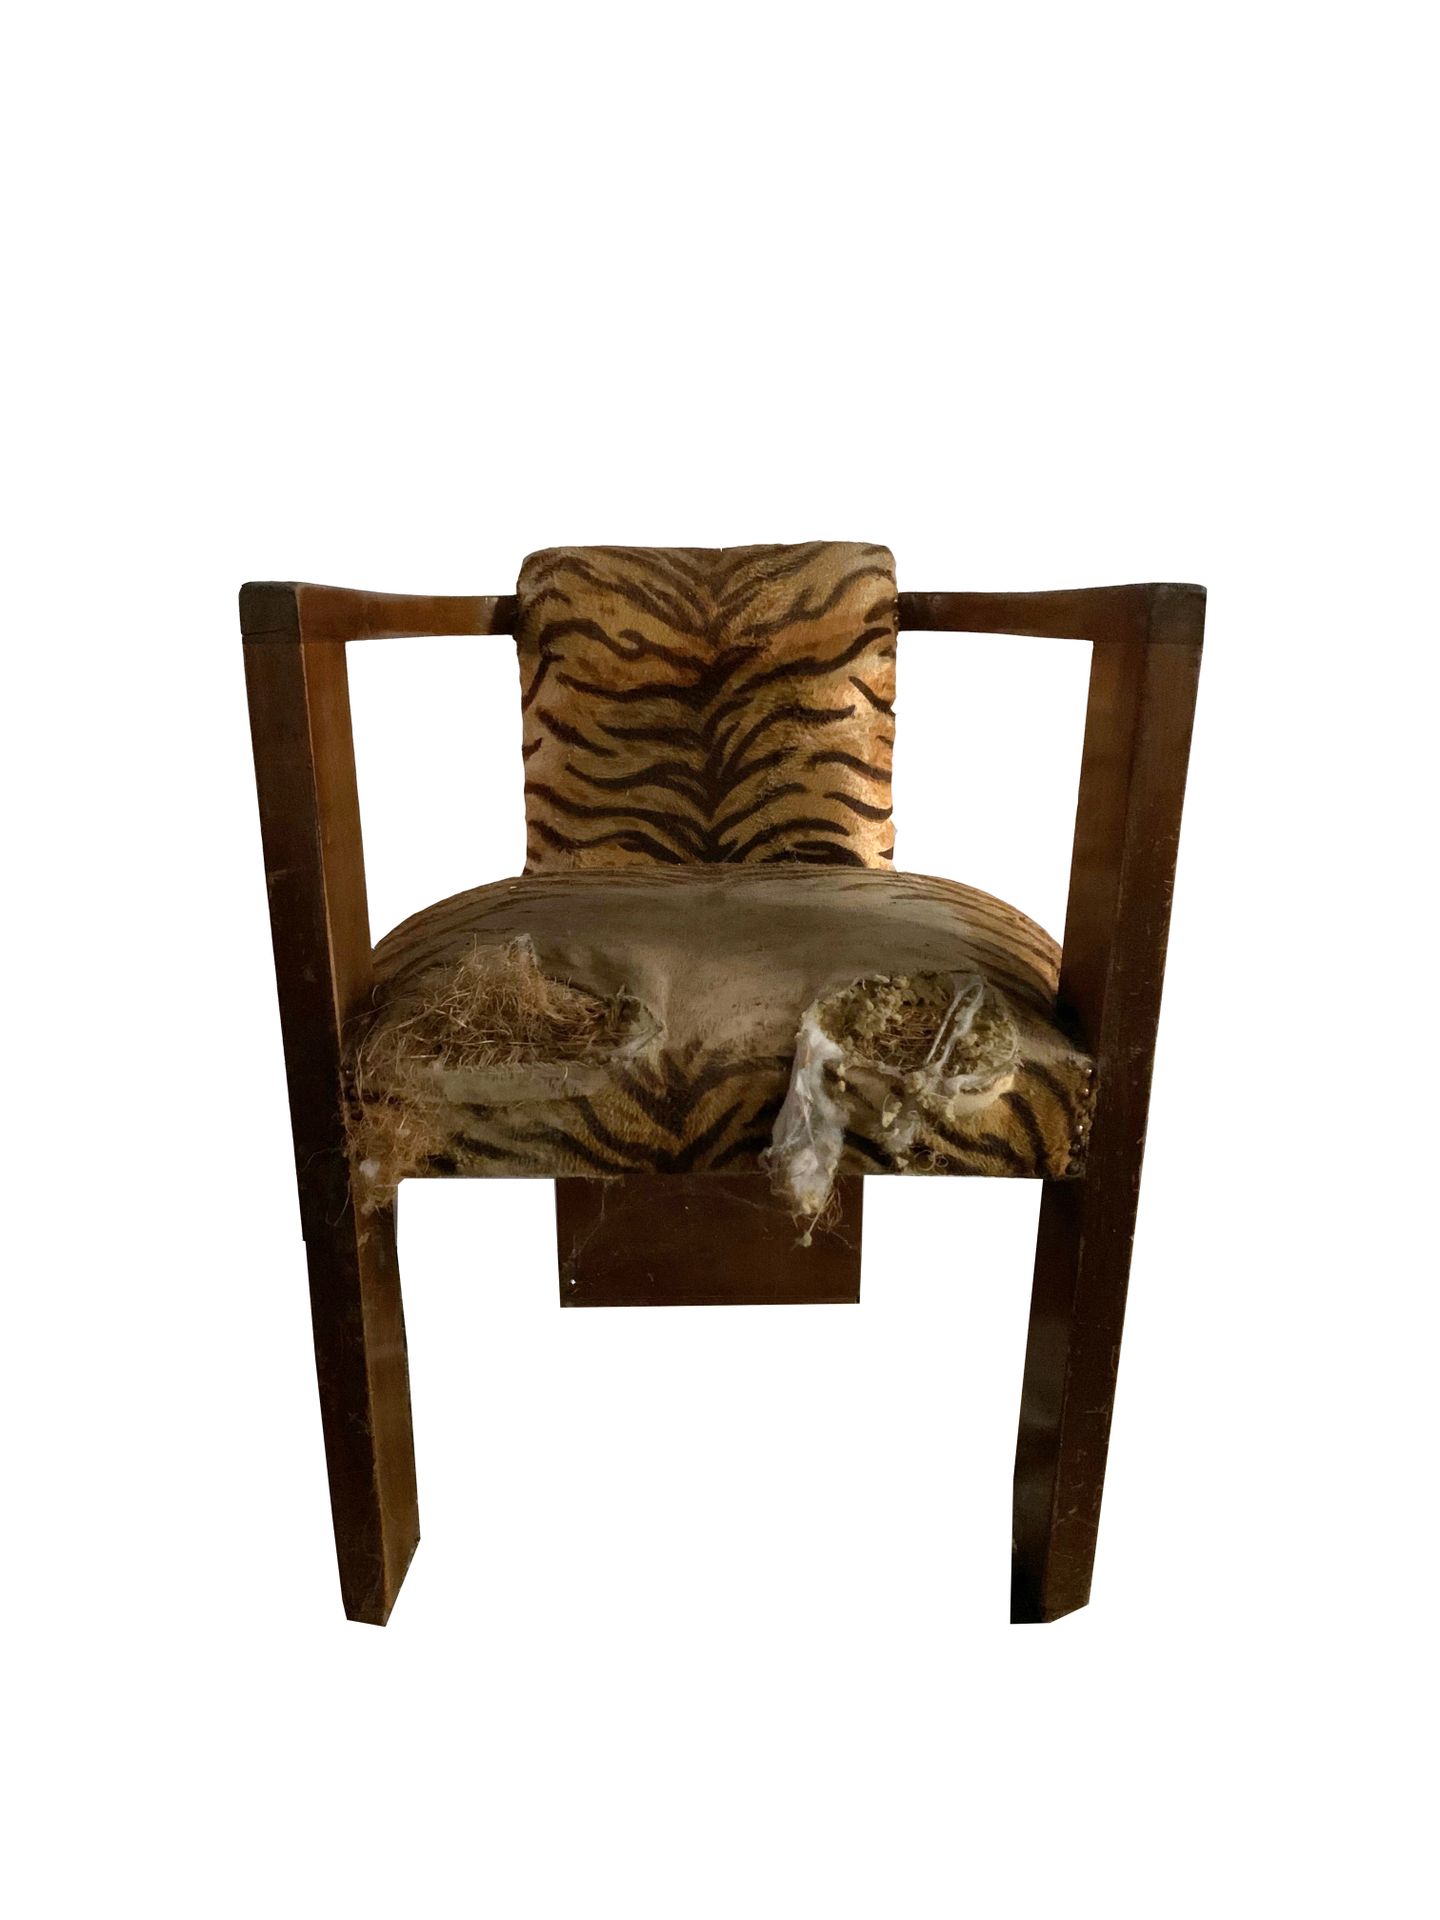 Fauteuil 
扶手椅。圆形的木质扶手。虎牌织物。恢复是可以预期的。